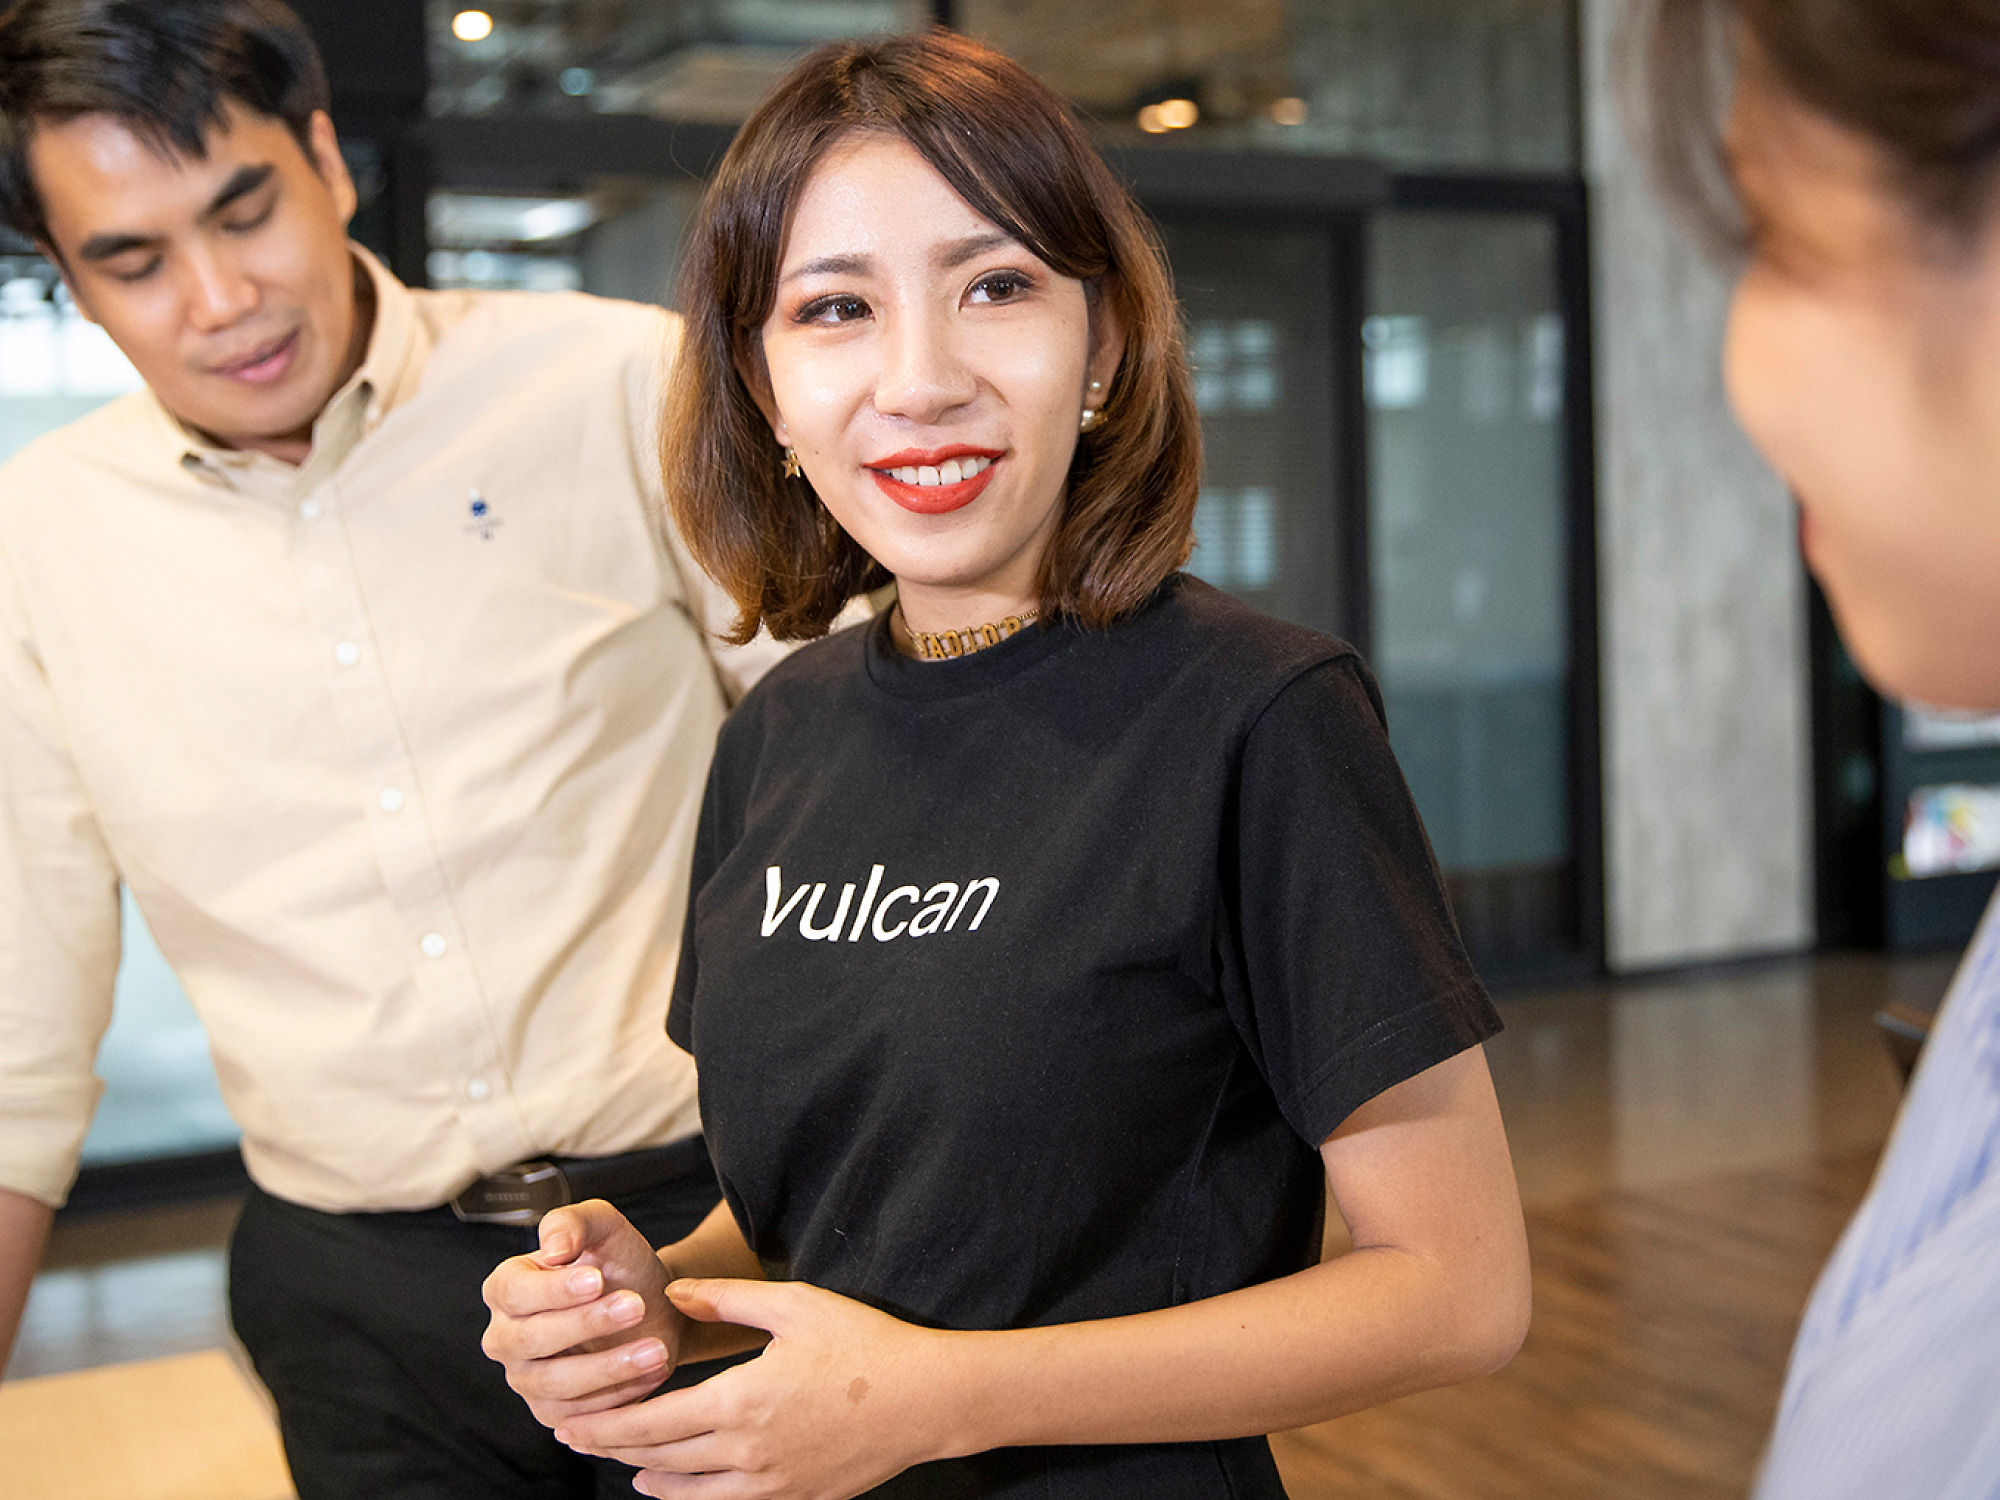 Una mujer joven con camiseta negra con la etiqueta vulcano sonriendo a un compañero de trabajo en un entorno de oficina moderna, con otro compañero masculino.